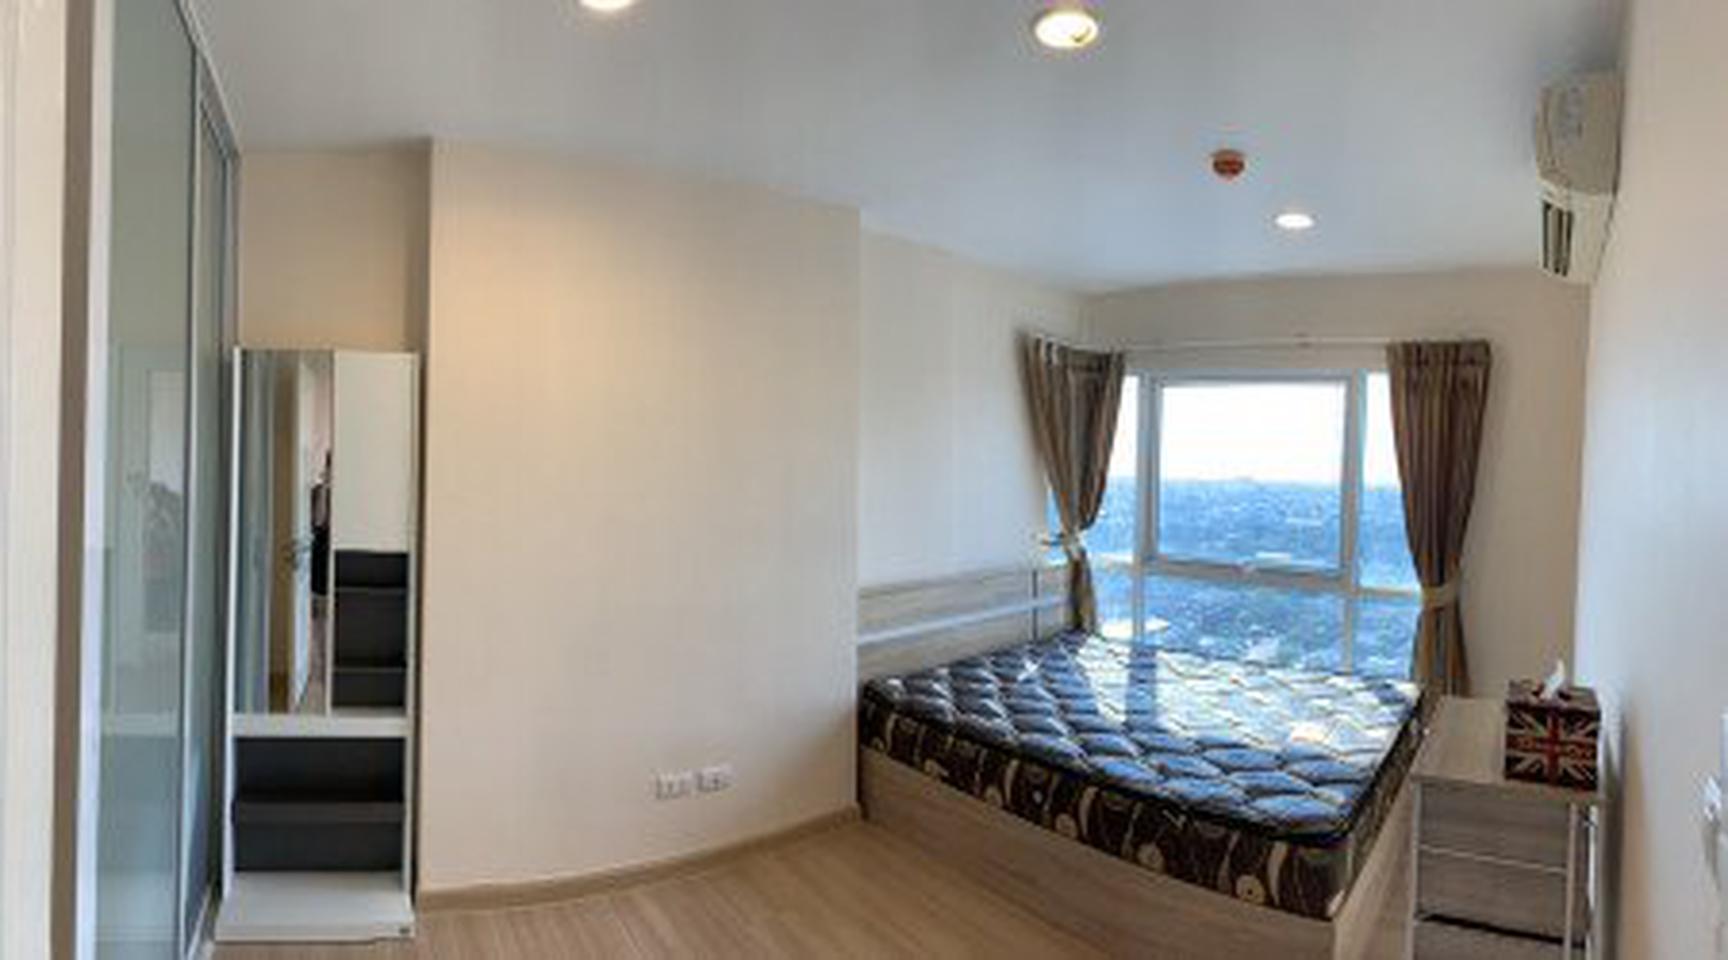 ขาย คอนโด ชั้นสูง วิวสวย เฟอร์SB ใหม่ครบ Bangkok Horizon รัชดา-ท่าพระ 32.80 ตรม. 1 ห้องนอน ราคาดีลพิเศษสุด ถูกสุด รูปเล็กที่ 7